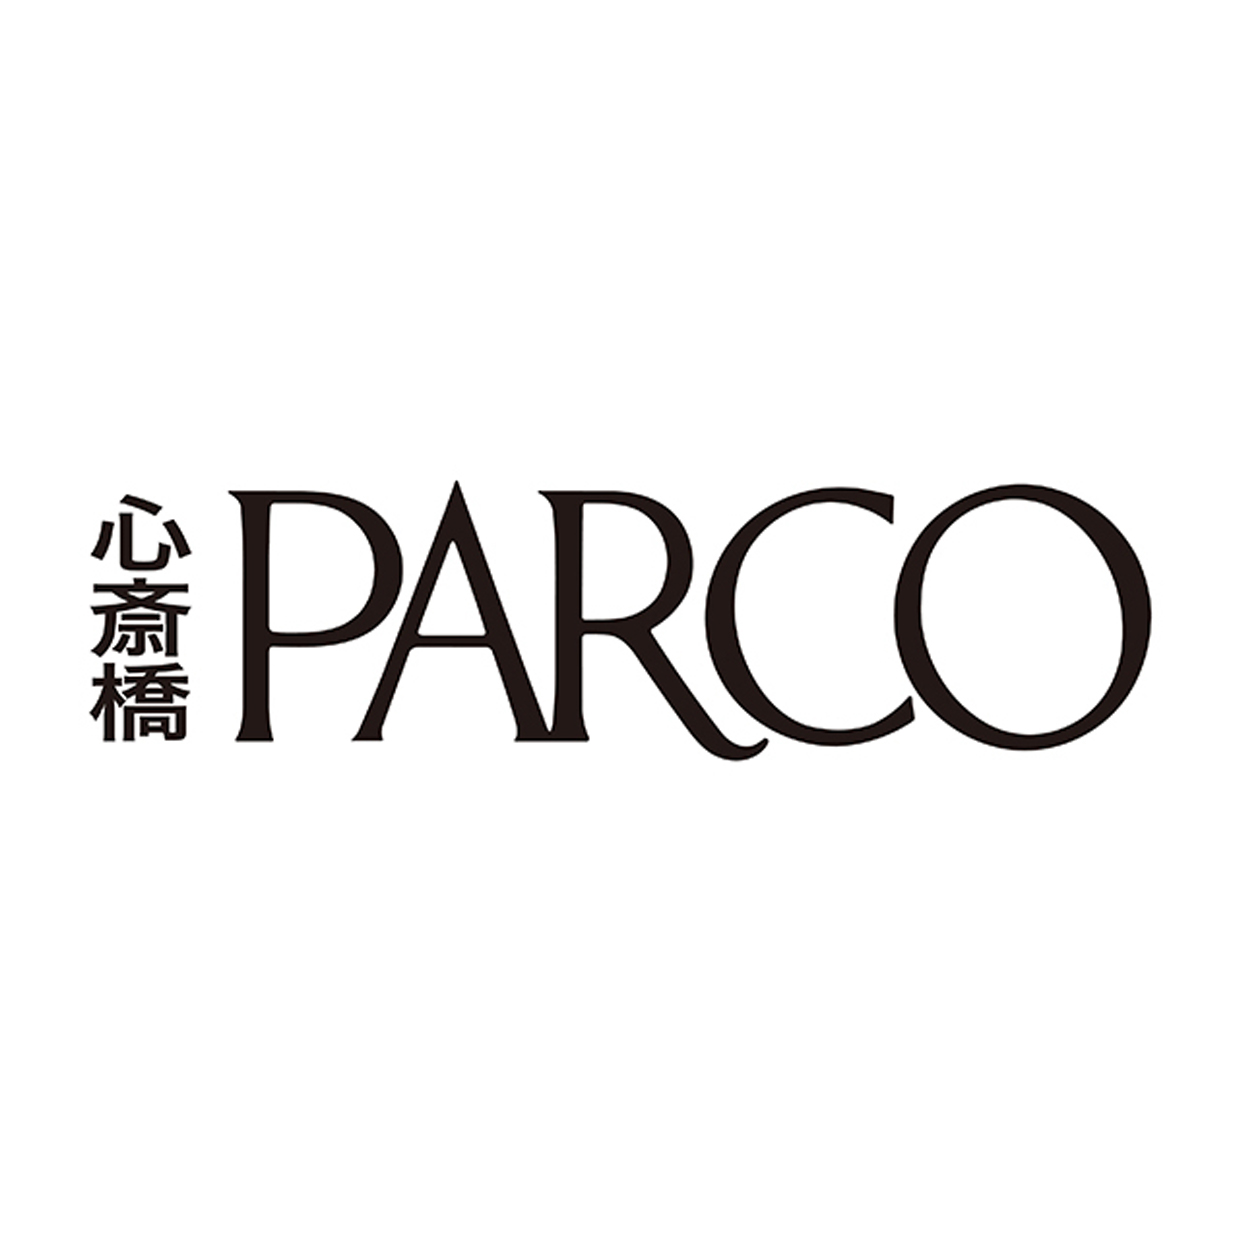 【お知らせ】PARCO Club offサービス提供終了について